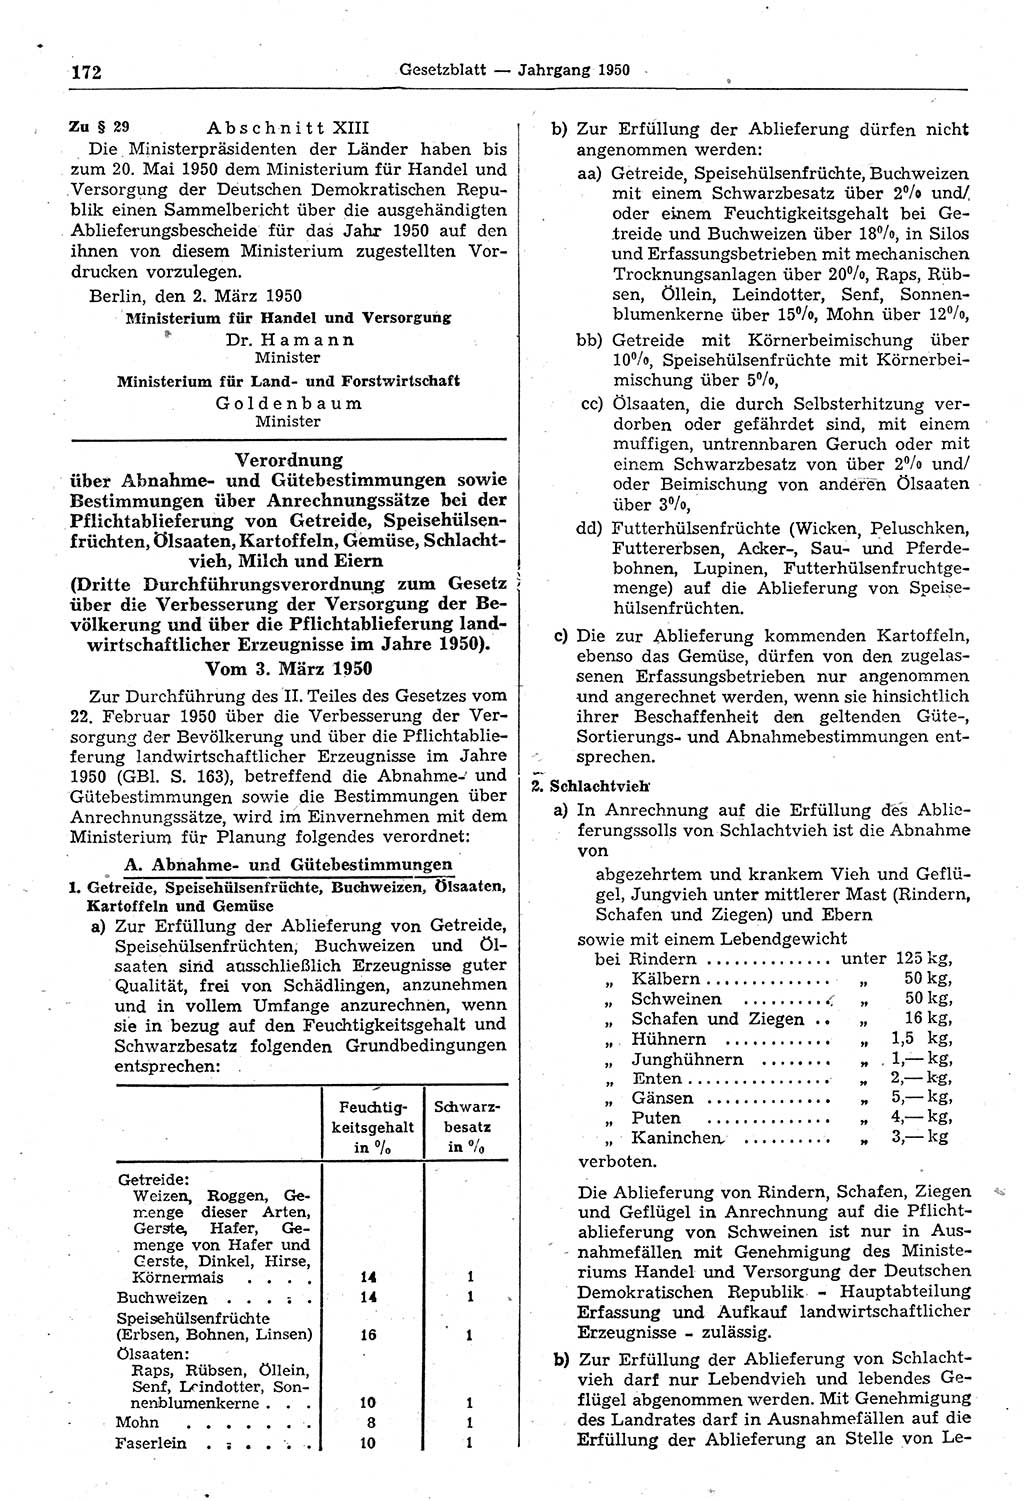 Gesetzblatt (GBl.) der Deutschen Demokratischen Republik (DDR) 1950, Seite 172 (GBl. DDR 1950, S. 172)